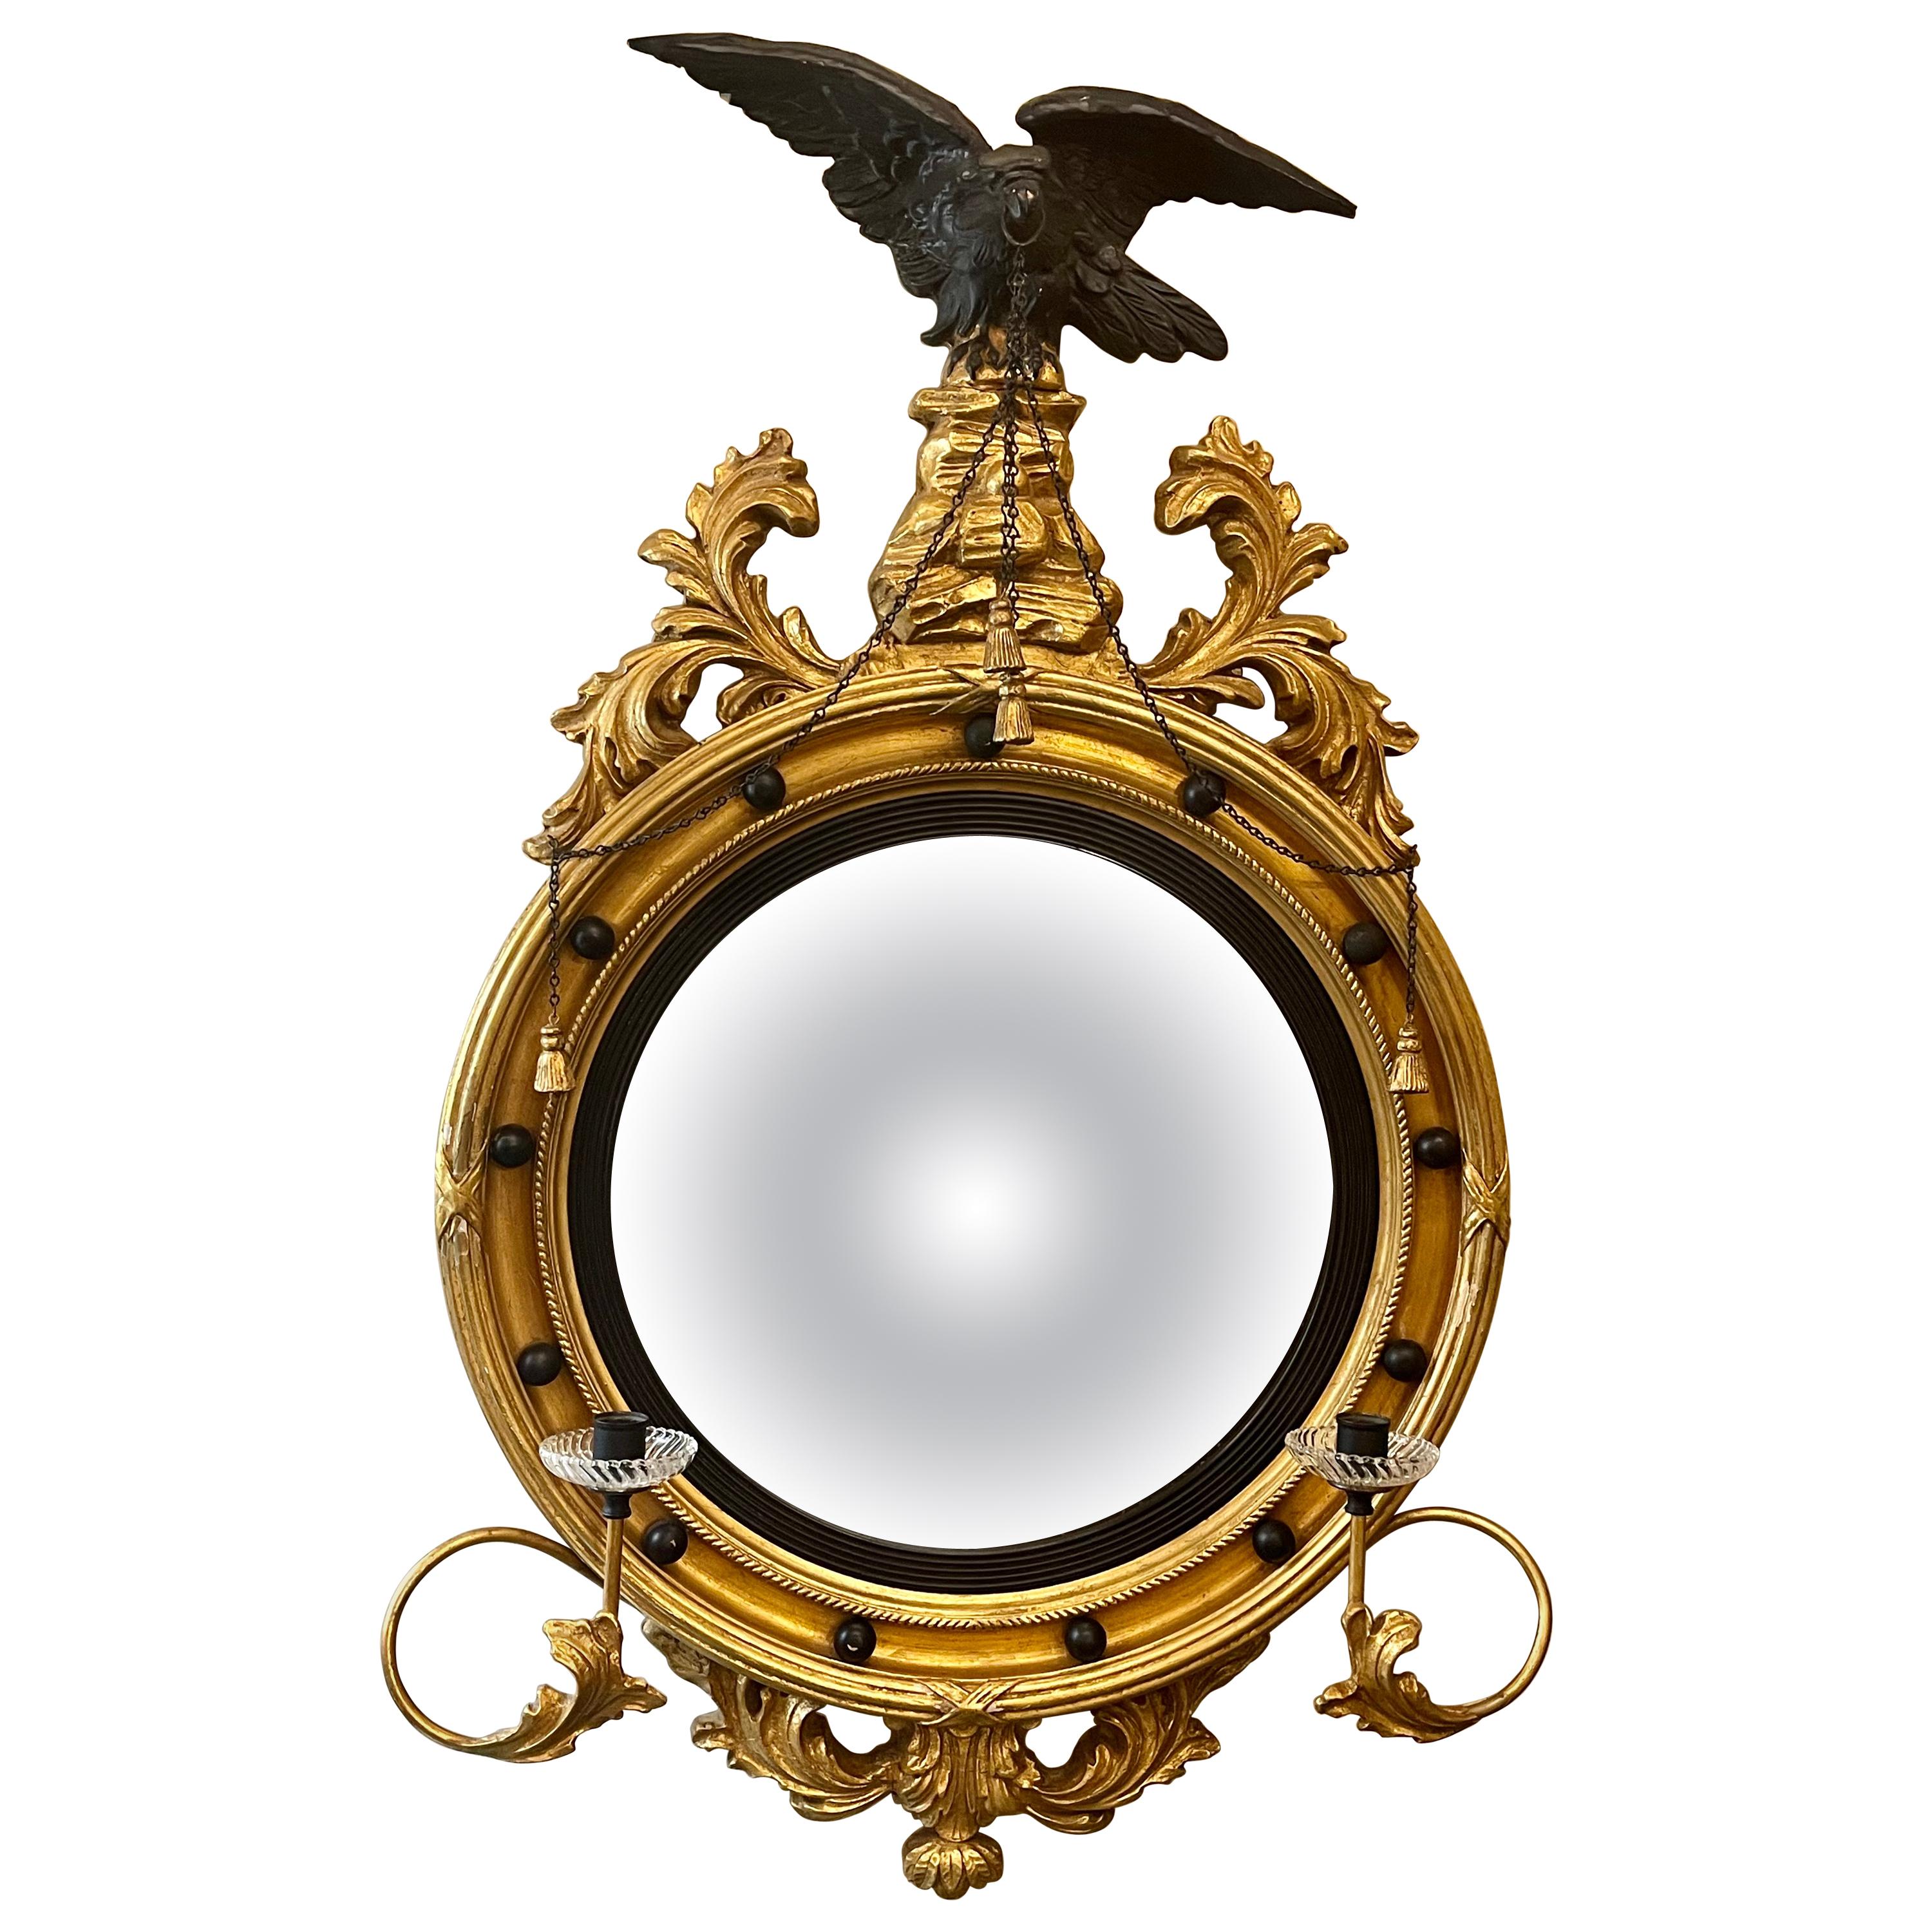 Federal Convex Bullseye Wall Mirror, 19th-20th Century Ebony And Gilt Gold